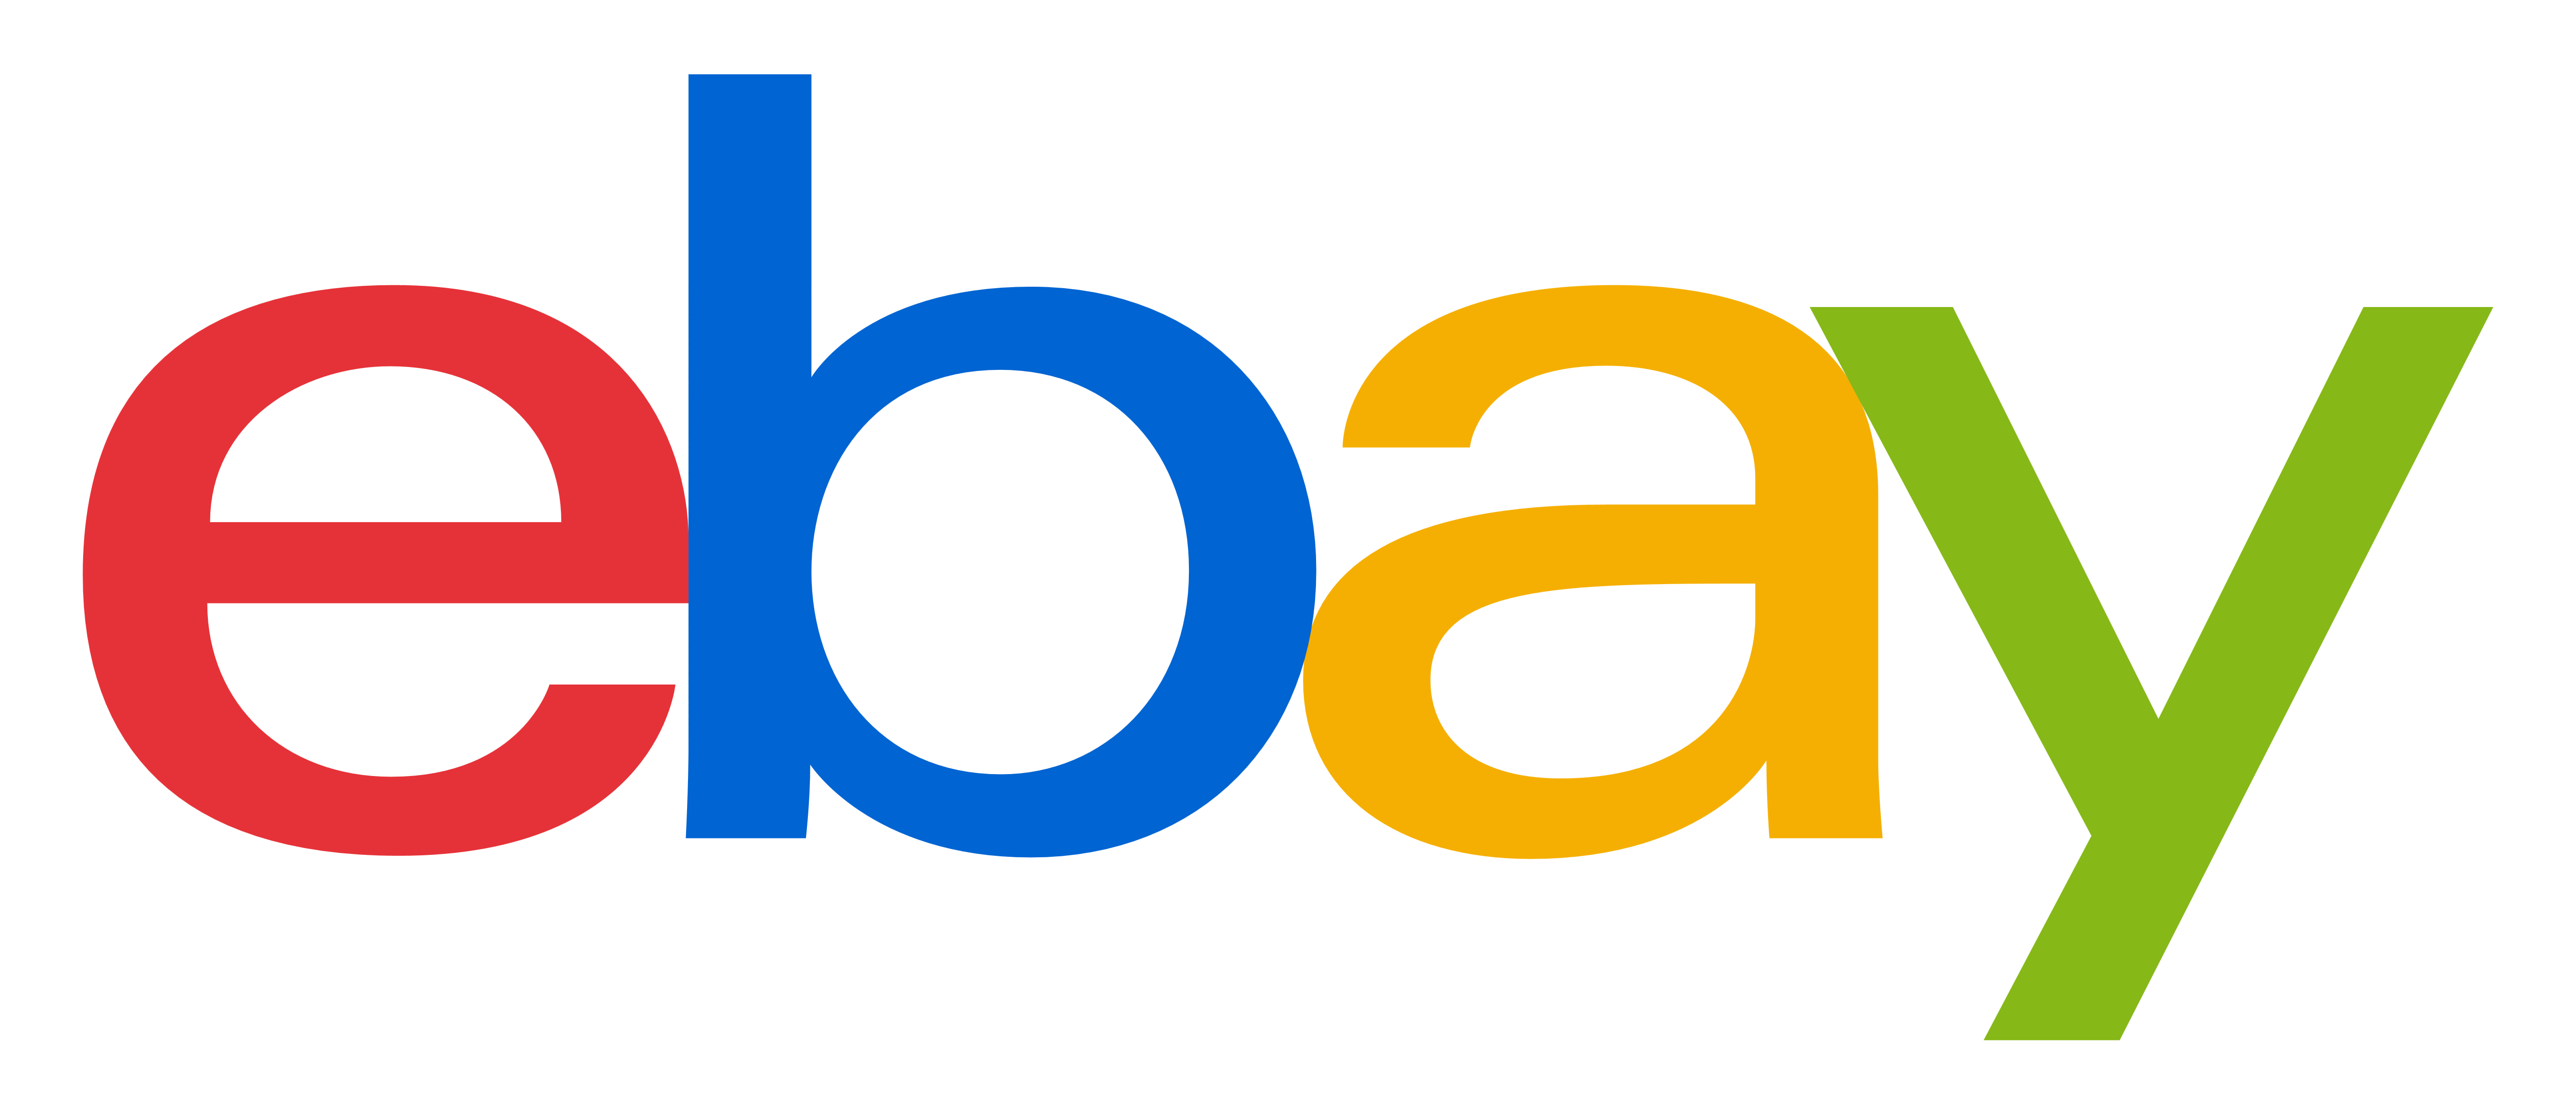 Logo eBay images Transparentes